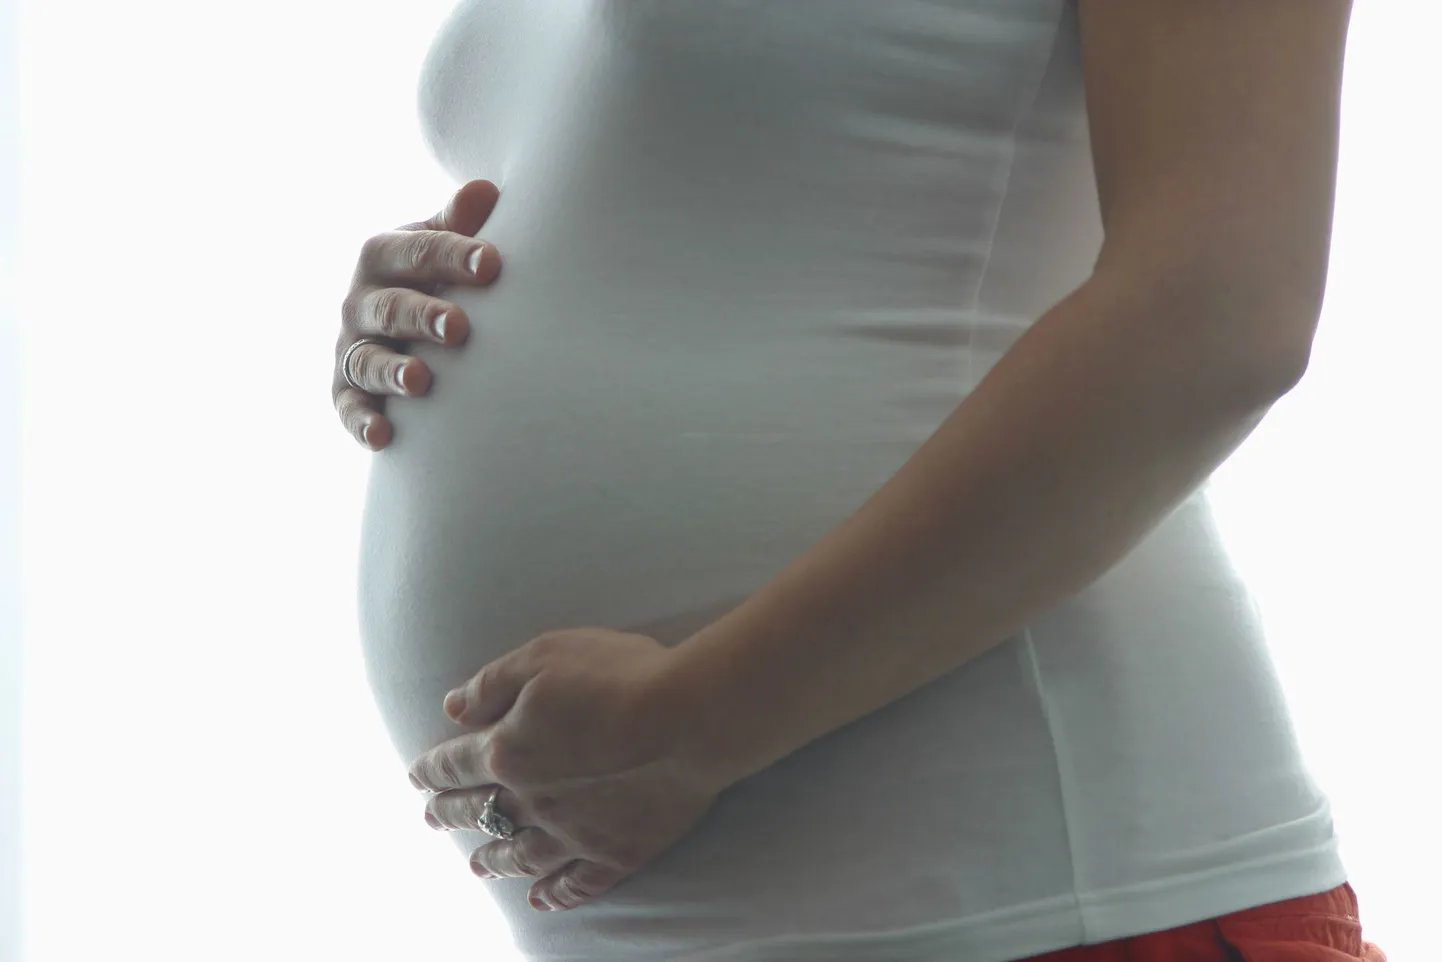 90 protsenti naistest otsustab Downi sündroomi testi positiivse tulemuse korral abordi kasuks